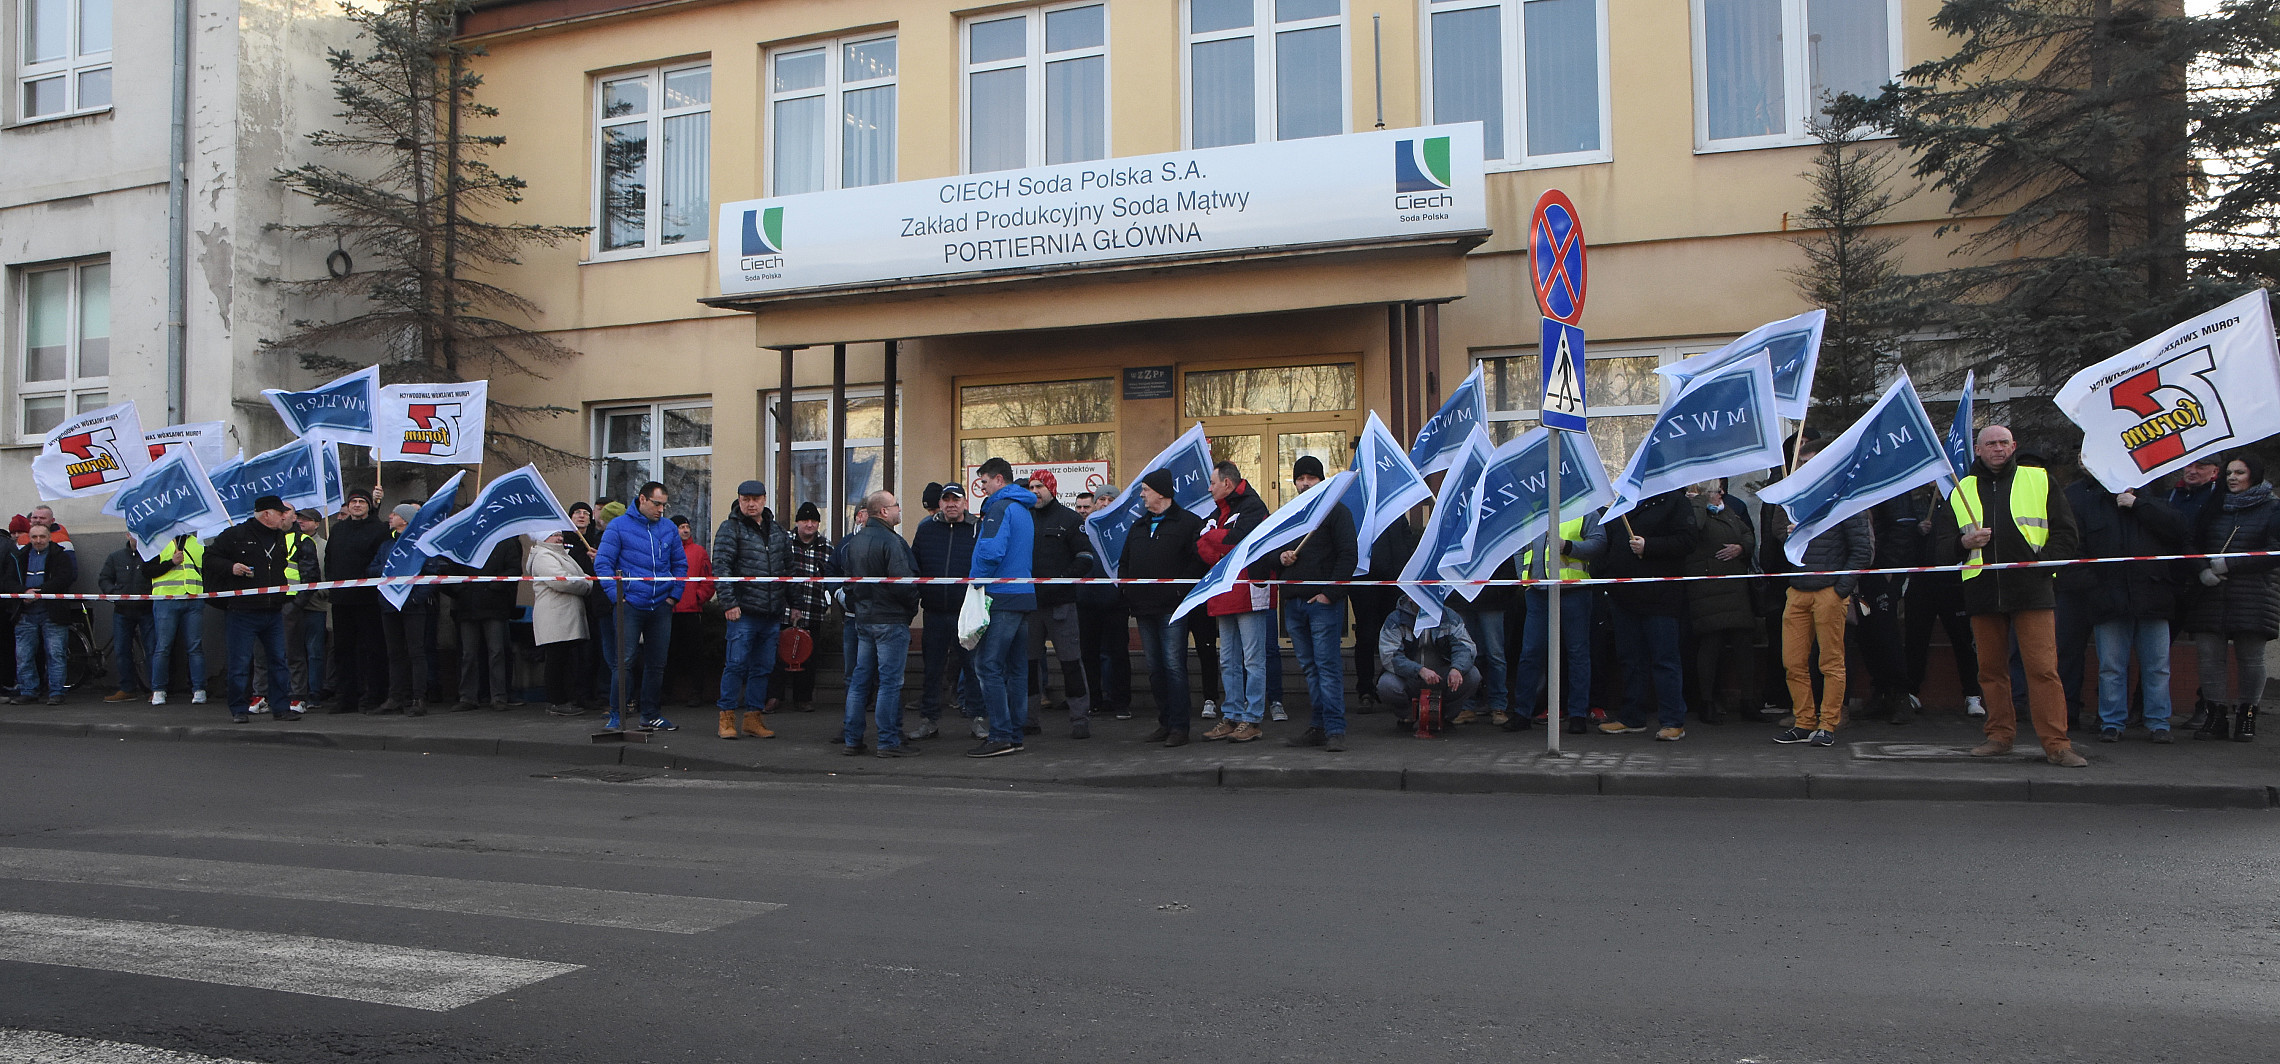 Inowrocław - Pracownicy protestowali przed zakładami Ciech